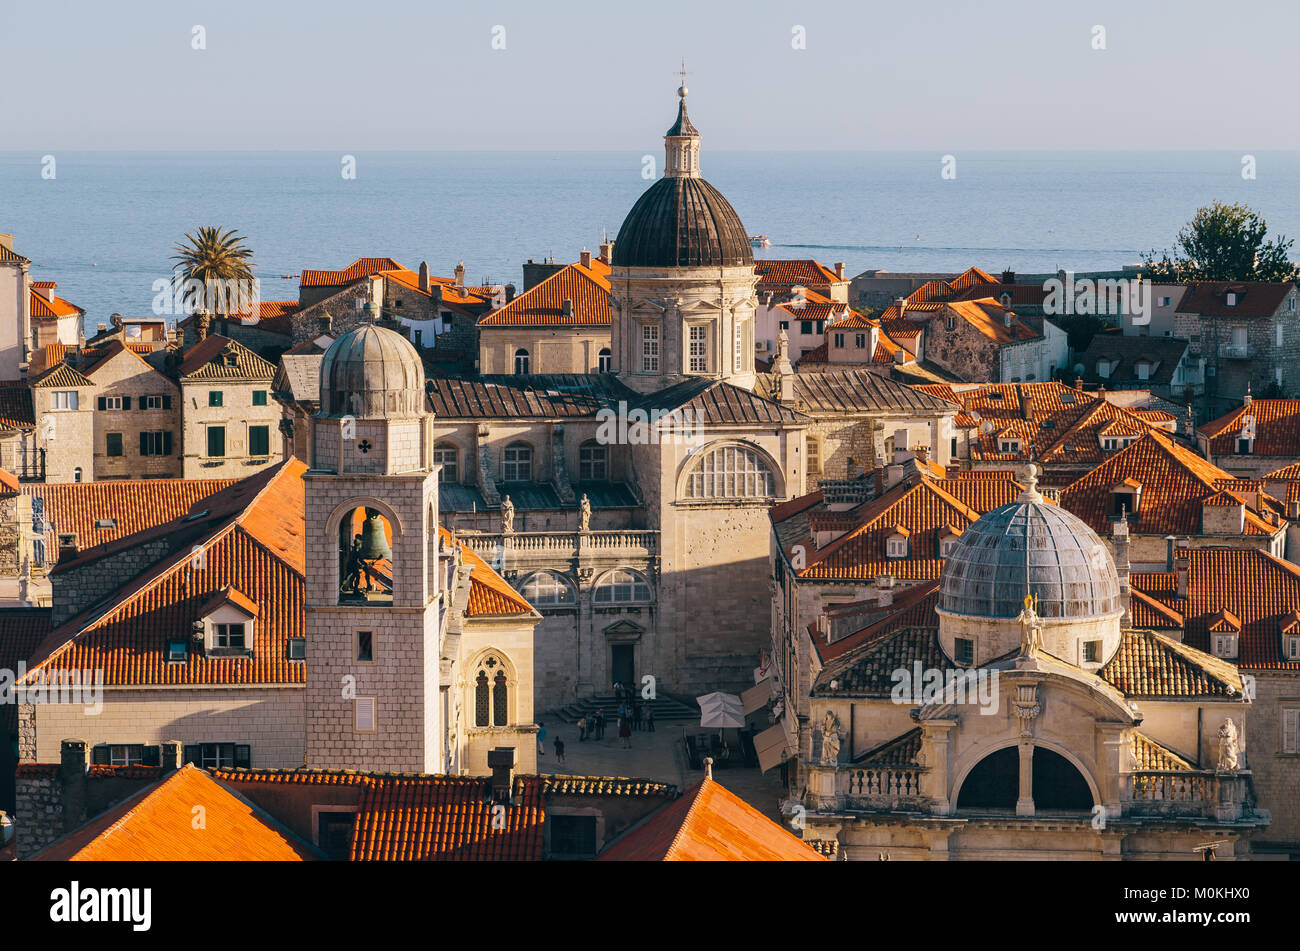 Vue panoramique sur la ville historique de Dubrovnik, l'une des plus célèbres destinations touristiques de la Méditerranée, au coucher du soleil, la Dalmatie, Croatie Banque D'Images